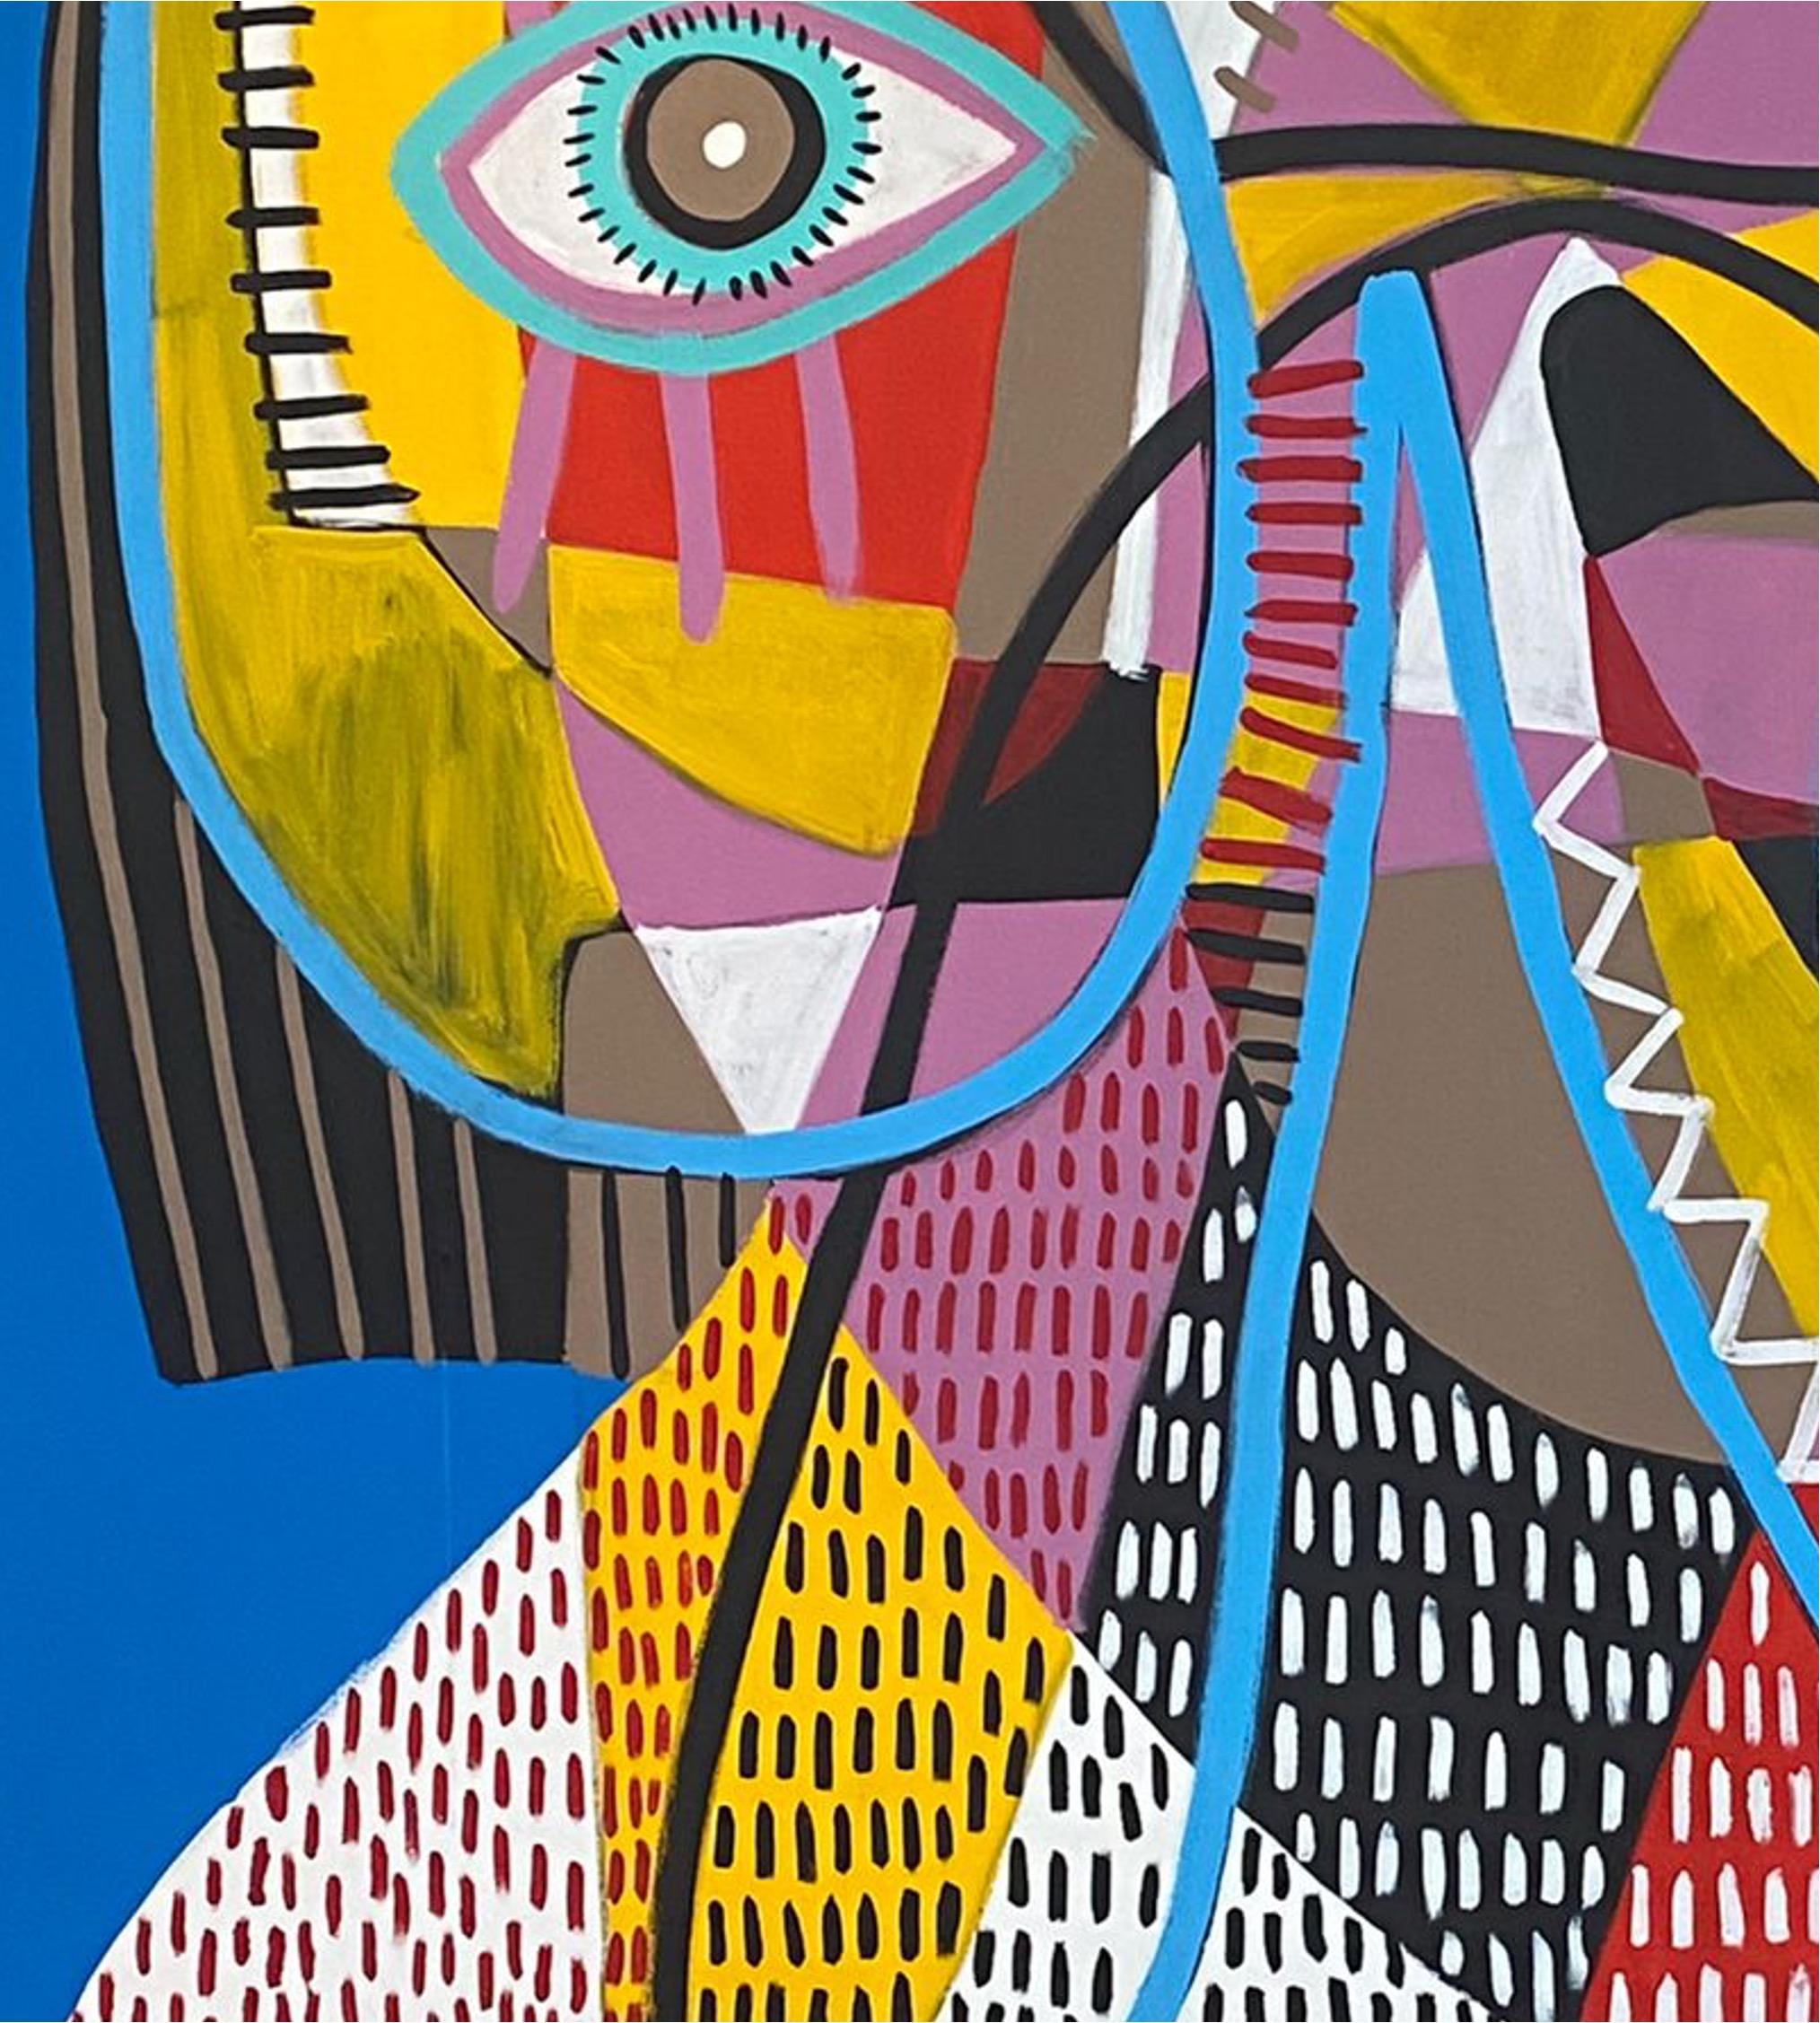 Art contemporain, peinture abstraite
Acrylique sur toile
220x225cm
Signé 
LIVRAISON GRATUITE : Livré roulé. 



A propos de l'artiste
Enrique Pichardo (Mexico, 1973) est diplômé de l'Escuela Nacional de Pintura, Escultura y Grabado (ENPEG) 